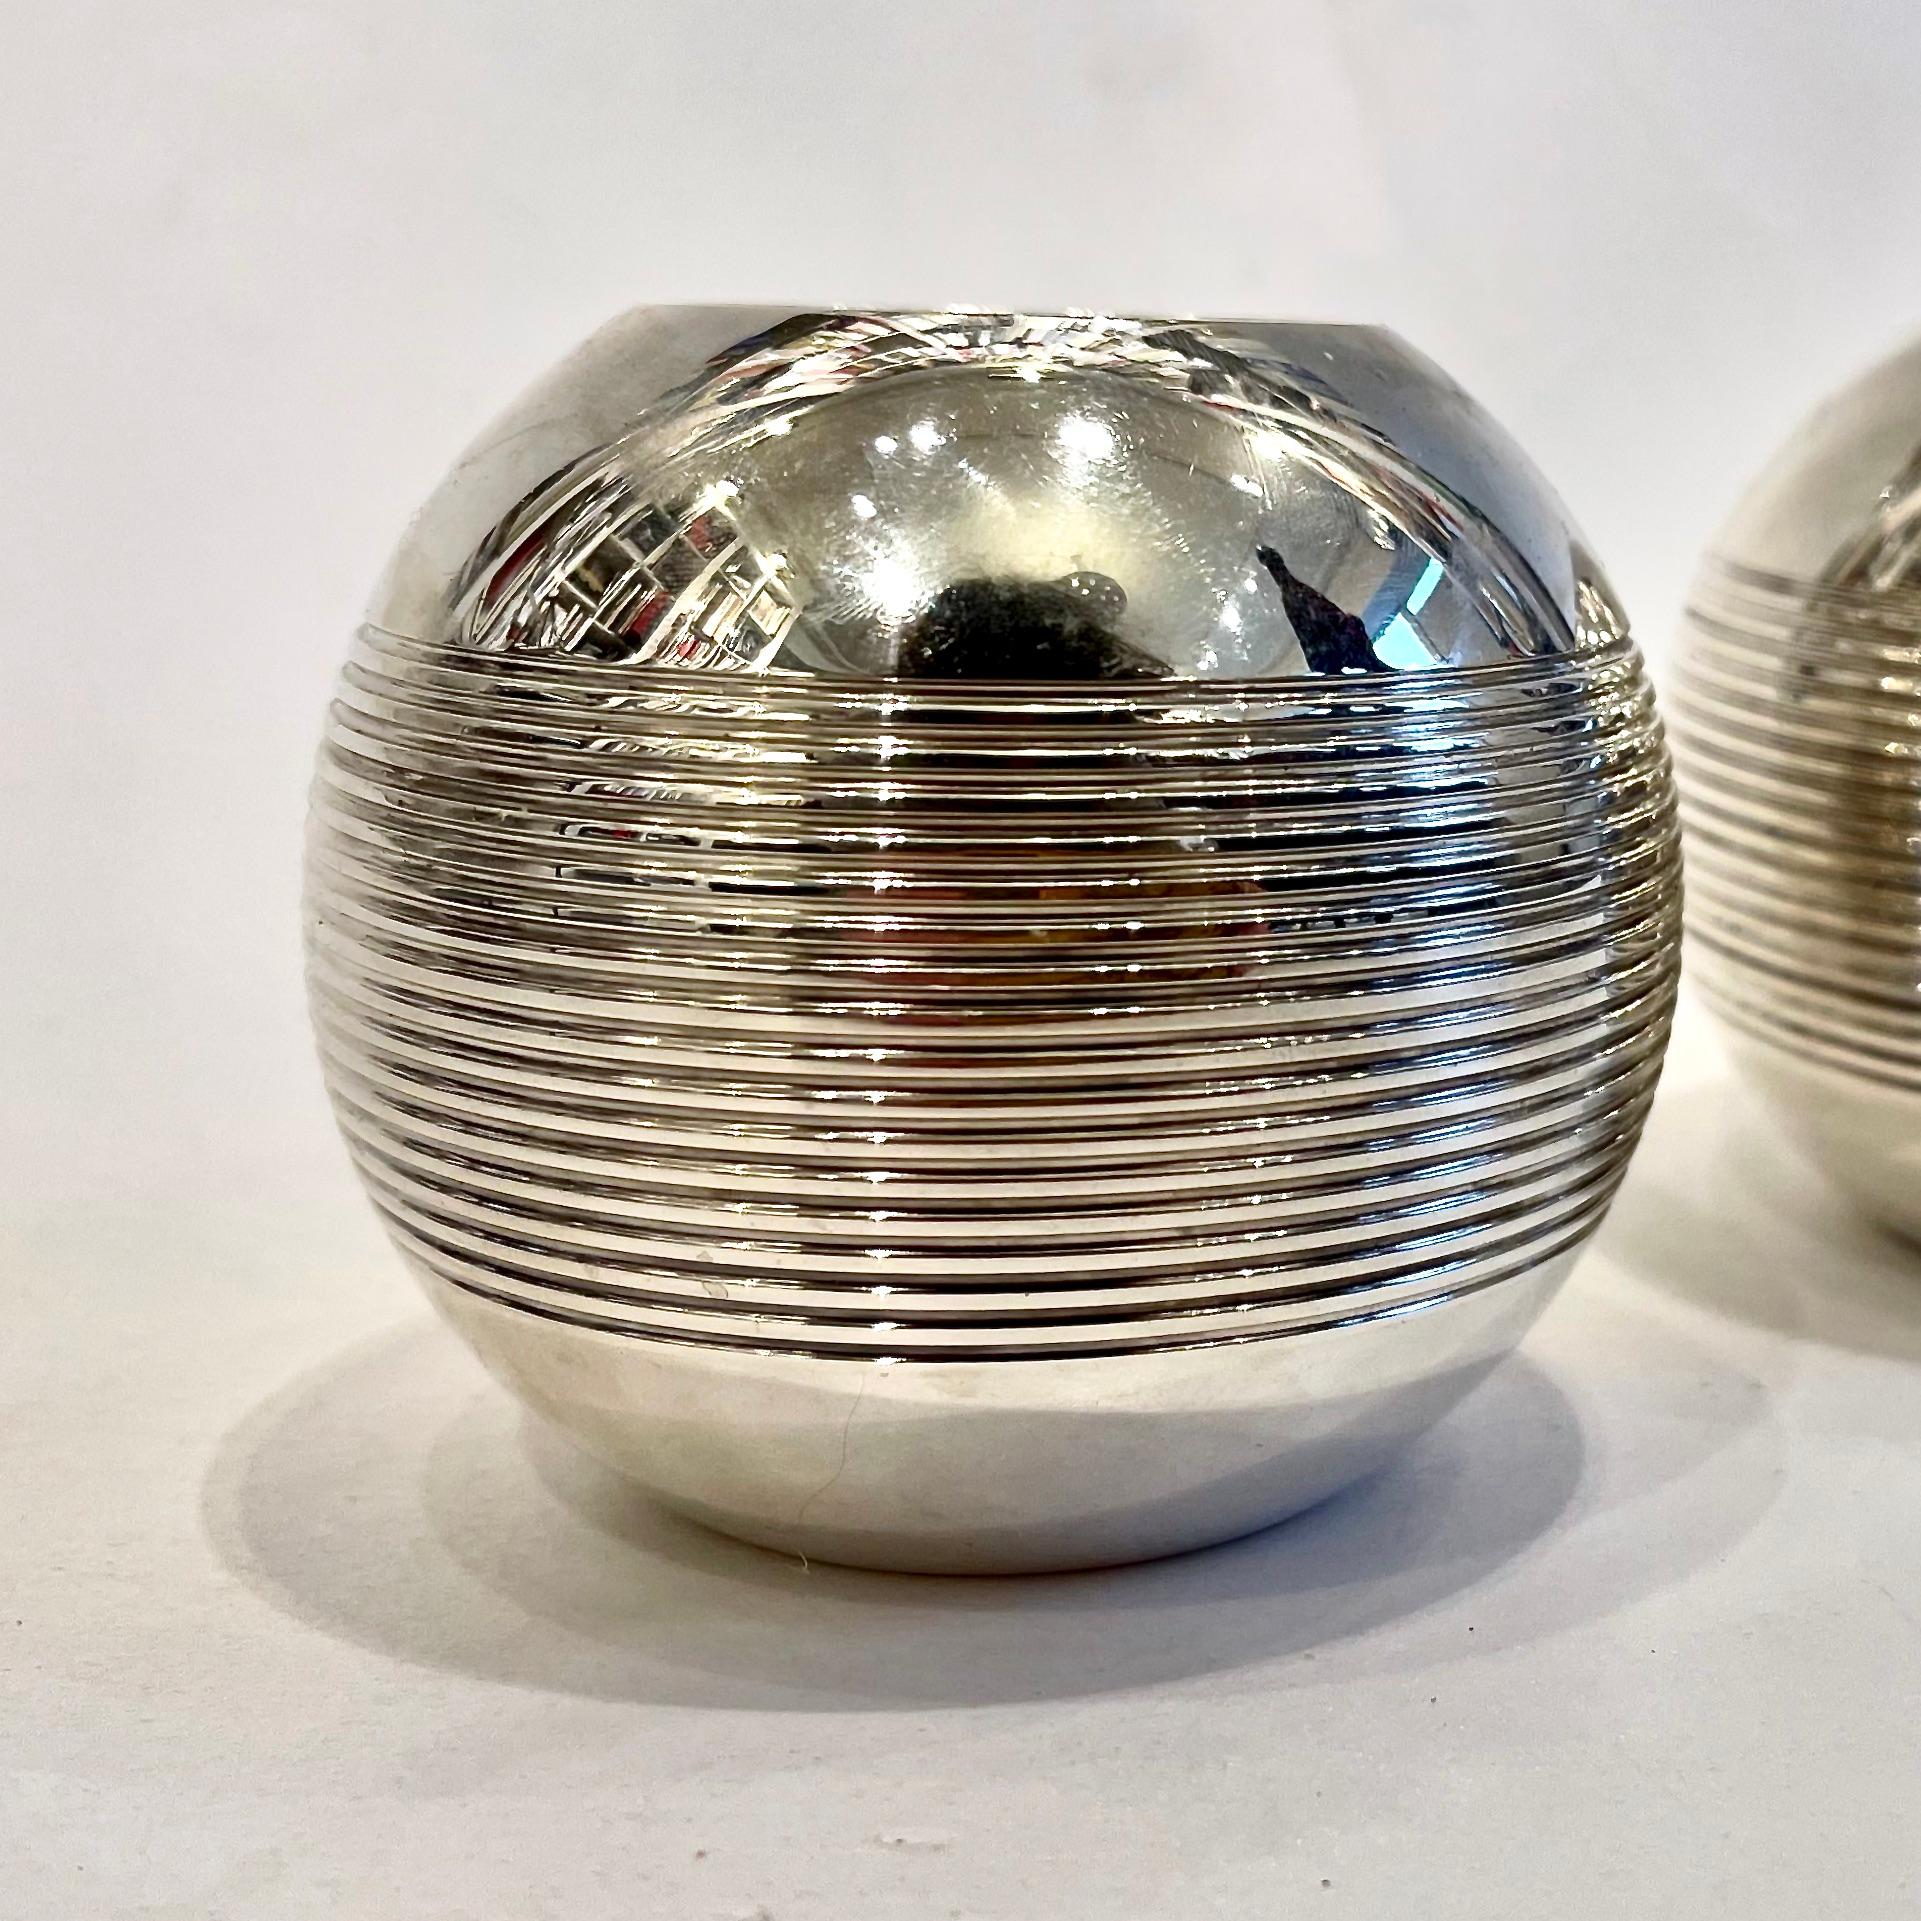 Cette paire de bougeoirs arrondis en métal argenté rappelle les boules d'acier utilisées pour la pétanque, le jeu traditionnel qui fait le bonheur des Provençaux depuis des siècles. 
C'est le cas de ces vases sphériques, façonnés en métal argenté